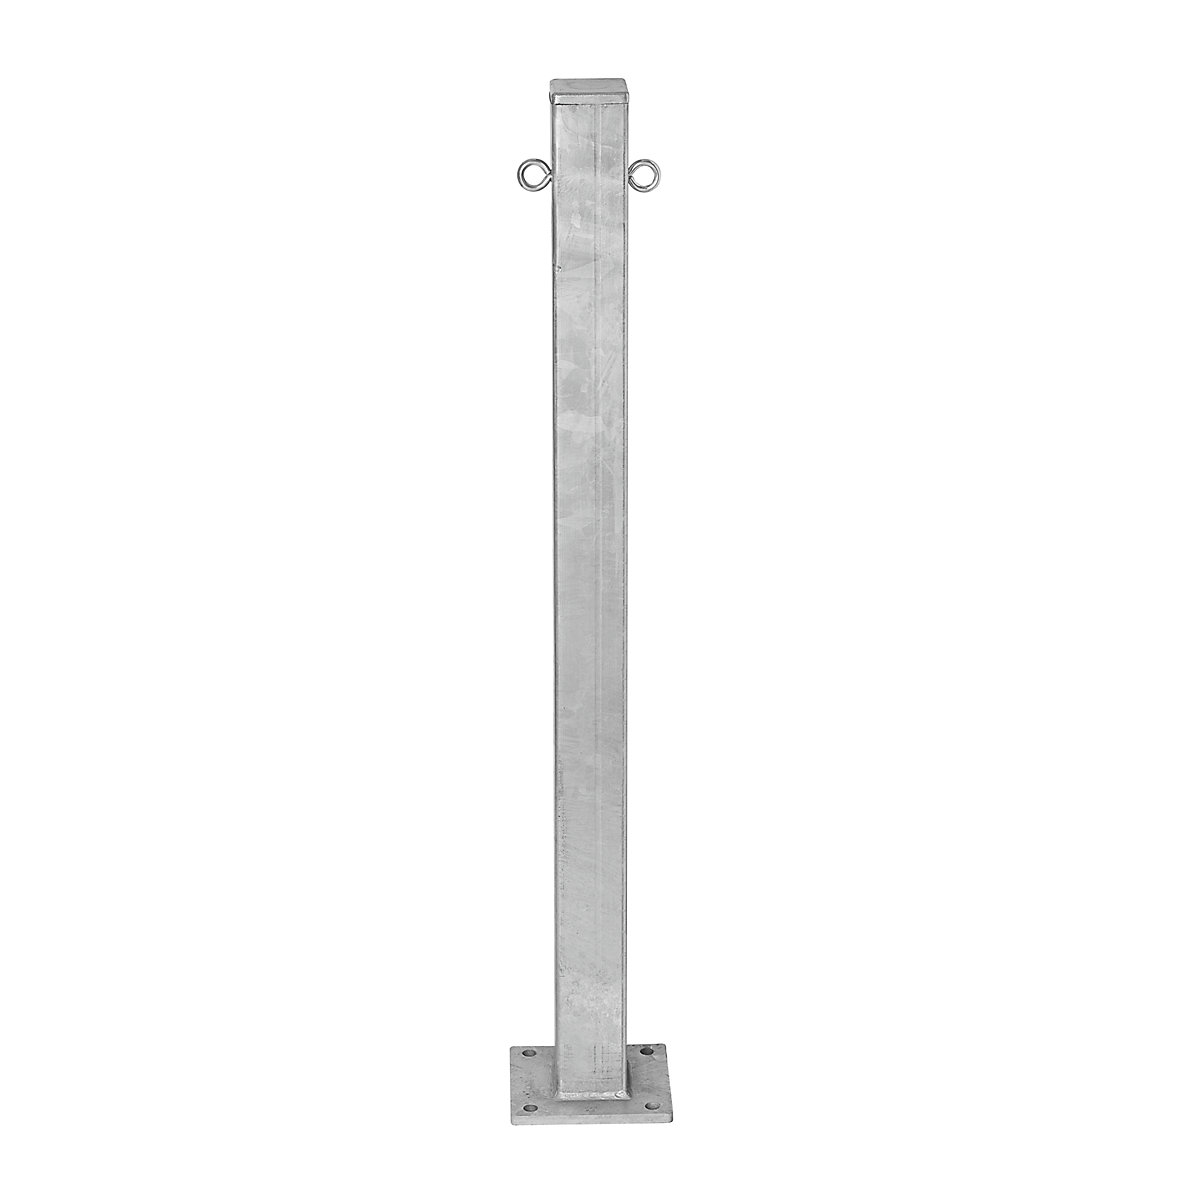 Čelični stup za ograđivanje, za pričvršćivanje tiplama, 70 x 70 mm, vruće pocinčana izvedba, 2 ušice lanaca-5